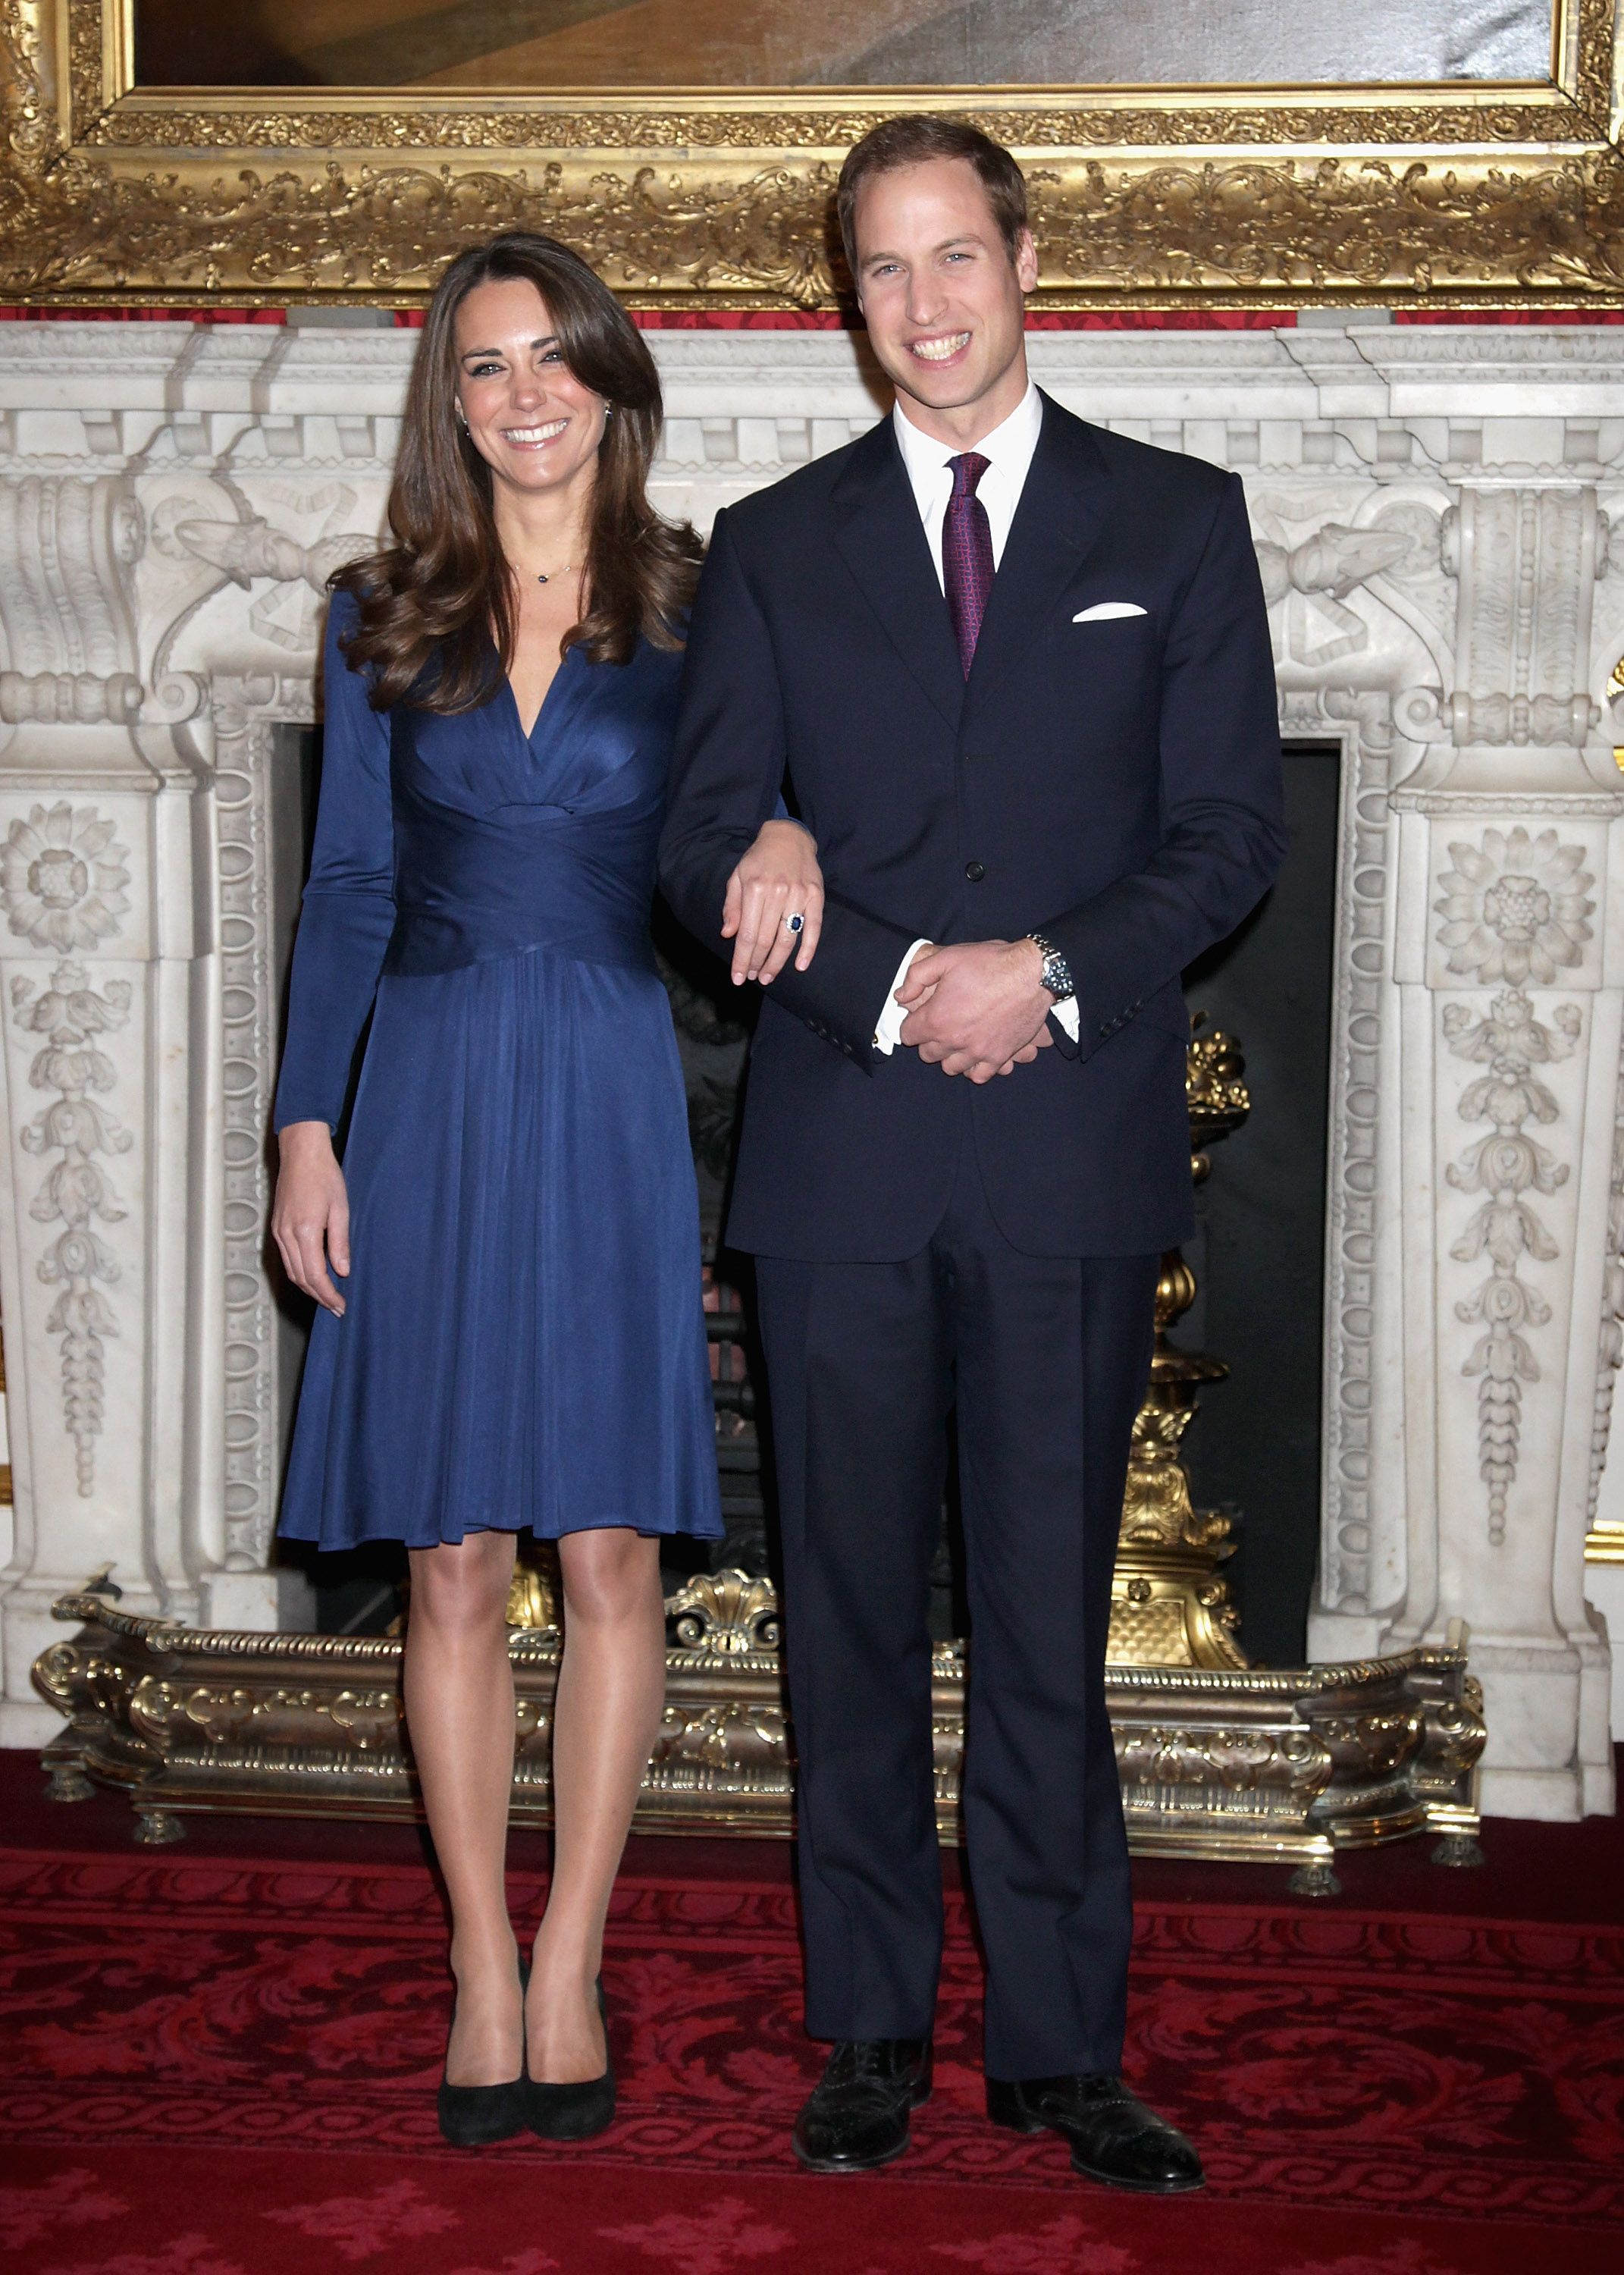 Le prince William et Kate Middleton dans les appartements d'État du palais St James, le 16 novembre 2010, à Londres, en Angleterre. | Source : Getty Images